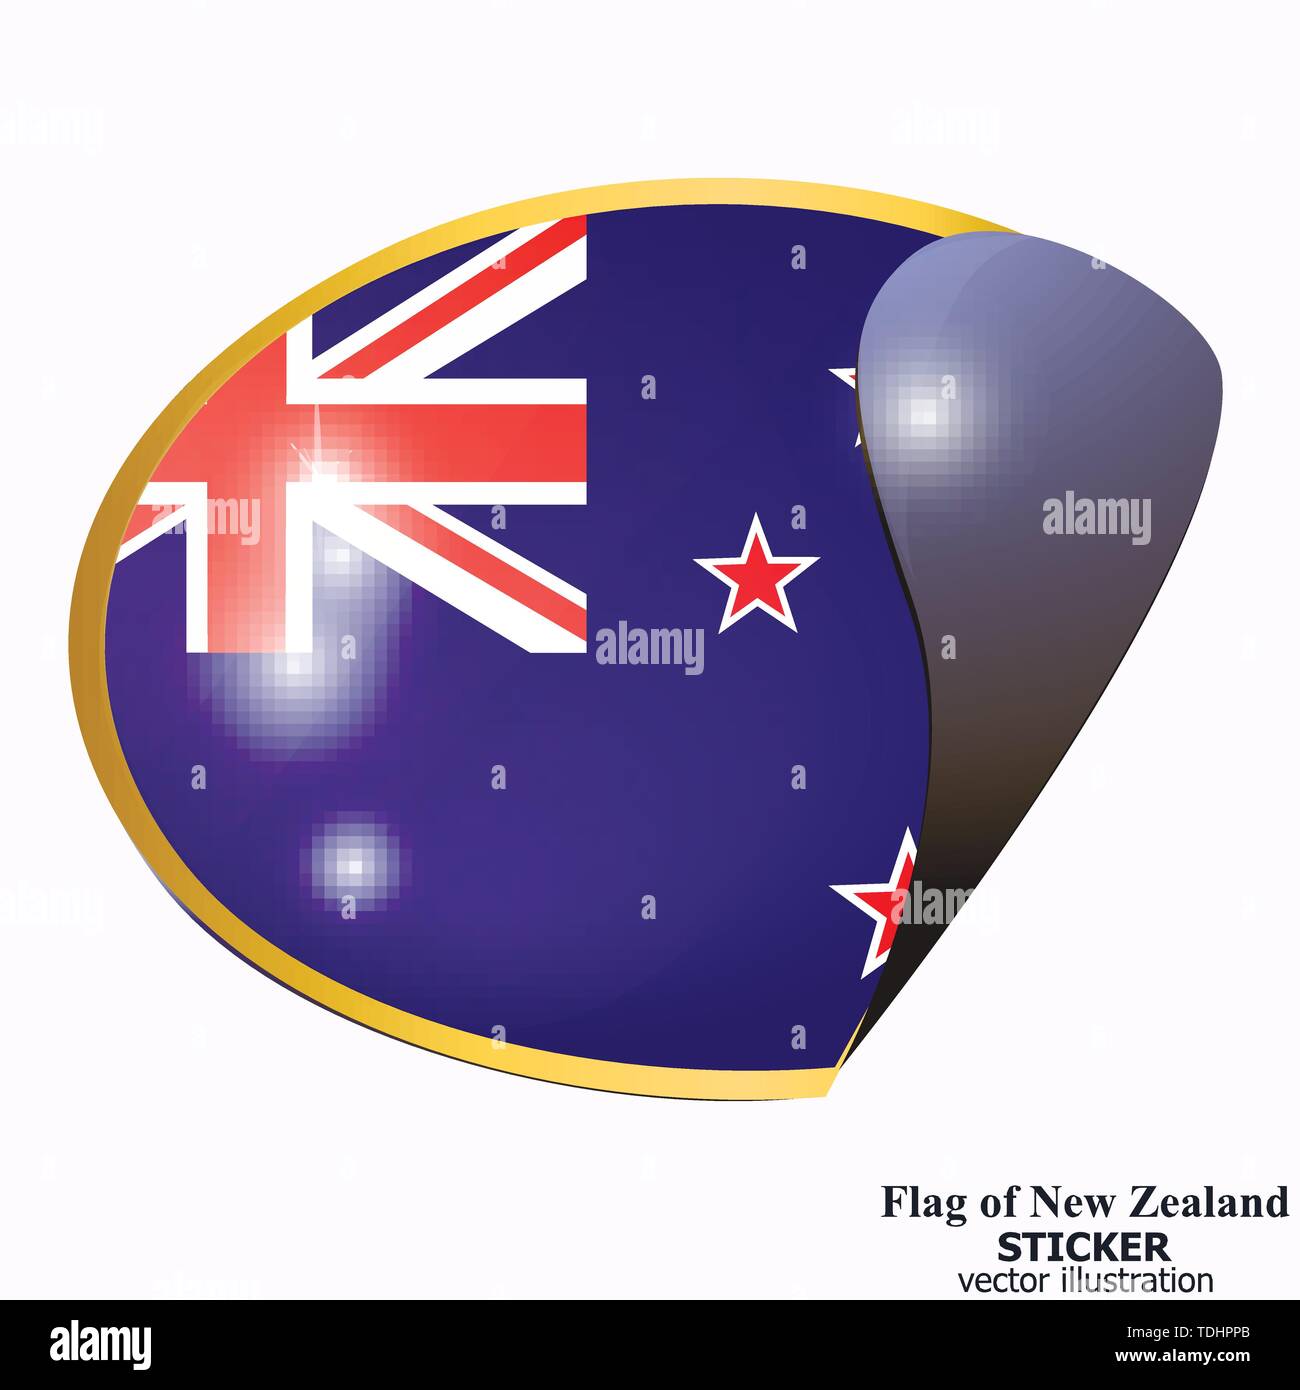 Faites en Nouvelle-Zélande autocollant. Bannière avec drapeau de la Nouvelle-Zélande. Illustration avec des drapeaux colorés pour la conception web. Vector Illustration avec fond blanc. Illustration de Vecteur